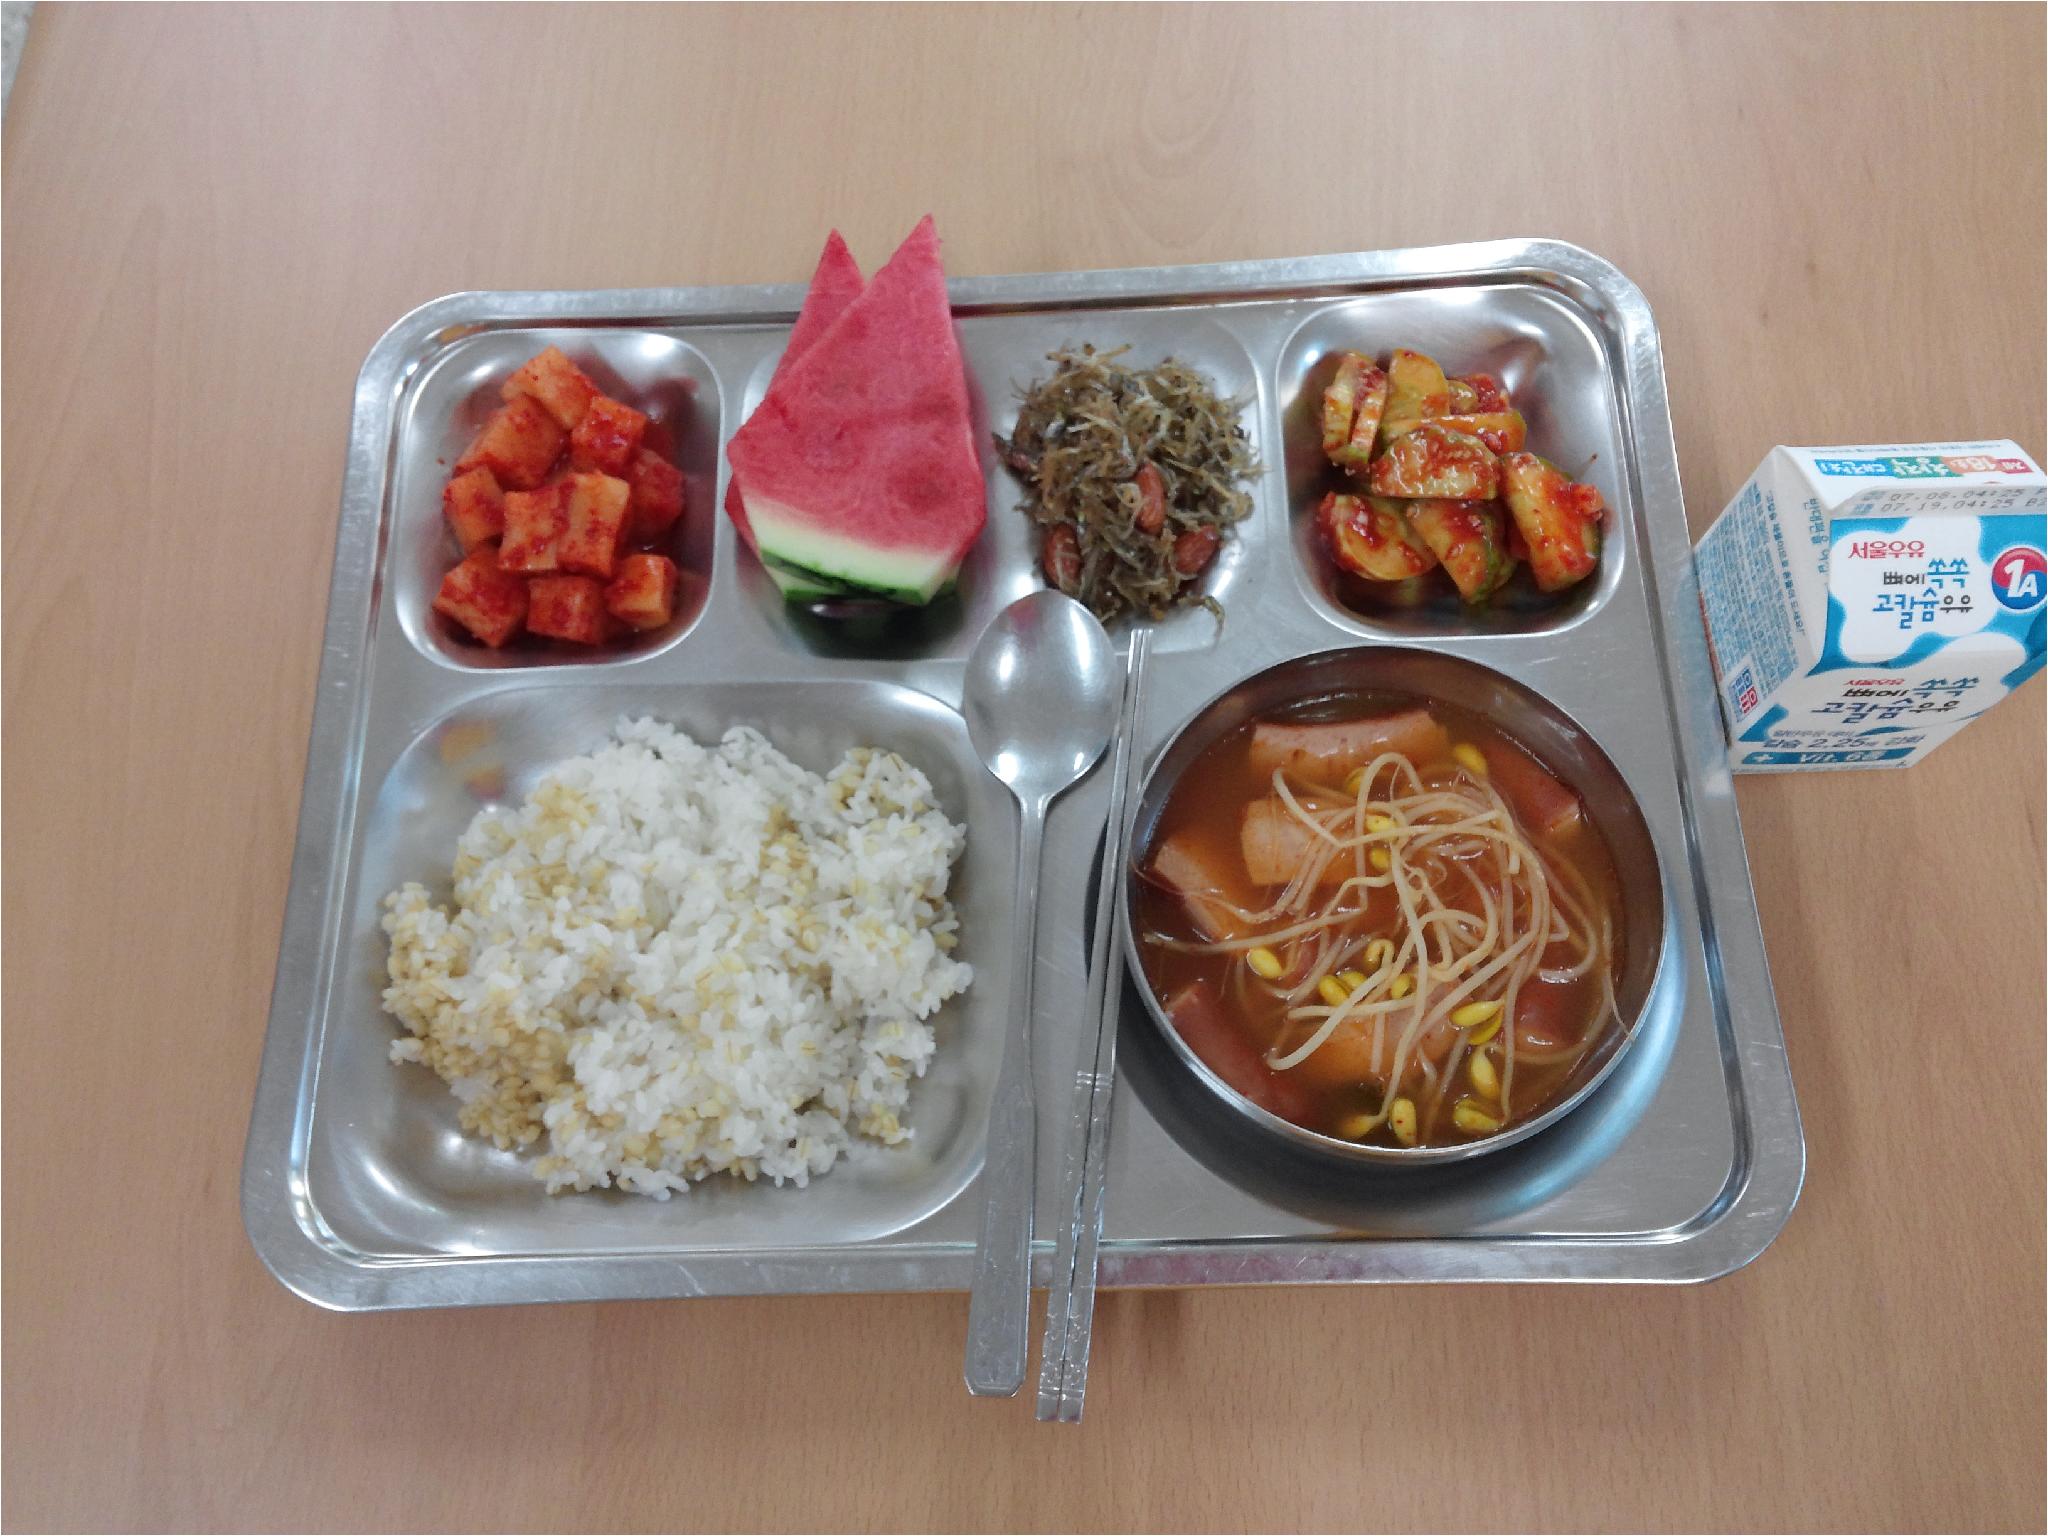 7월 11일 식단  보리밥 햄모듬찌개 오이무침 아몬드멸치볶음 김치 수박 우유